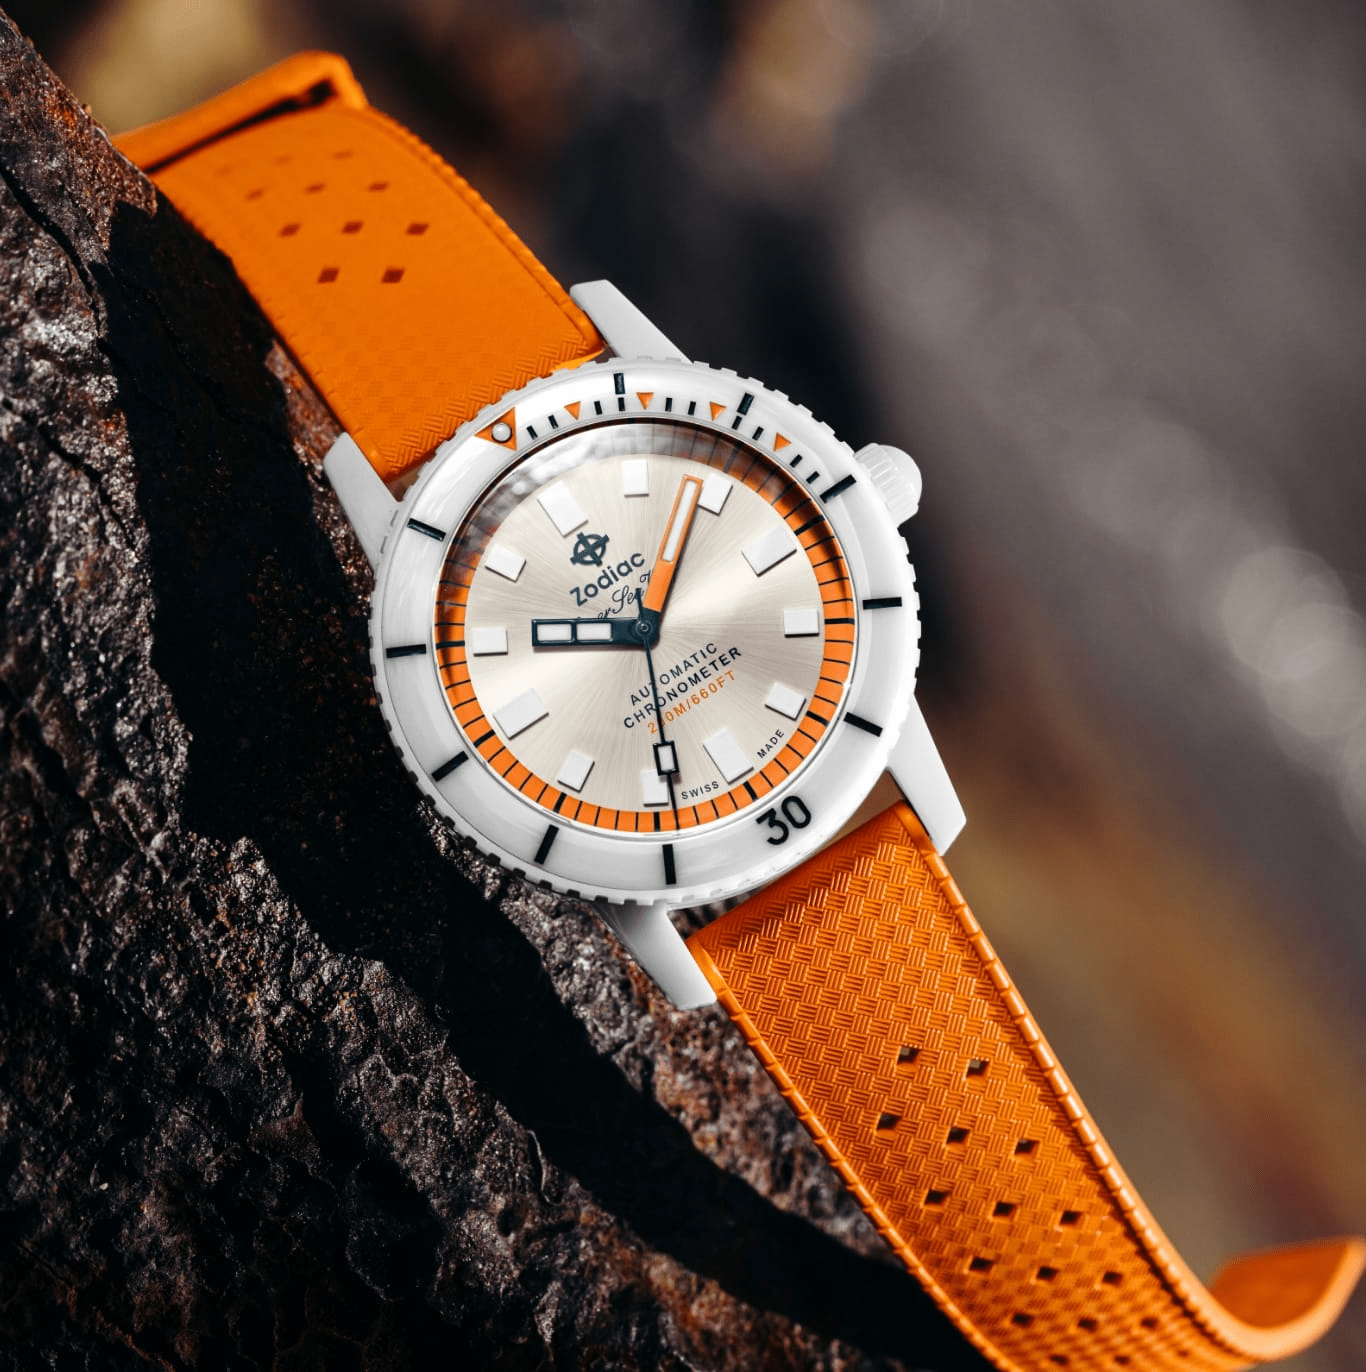 Zodiac Super Sea Wolf Ceramic Compression Orange Automatic Men's Watch ZO9591